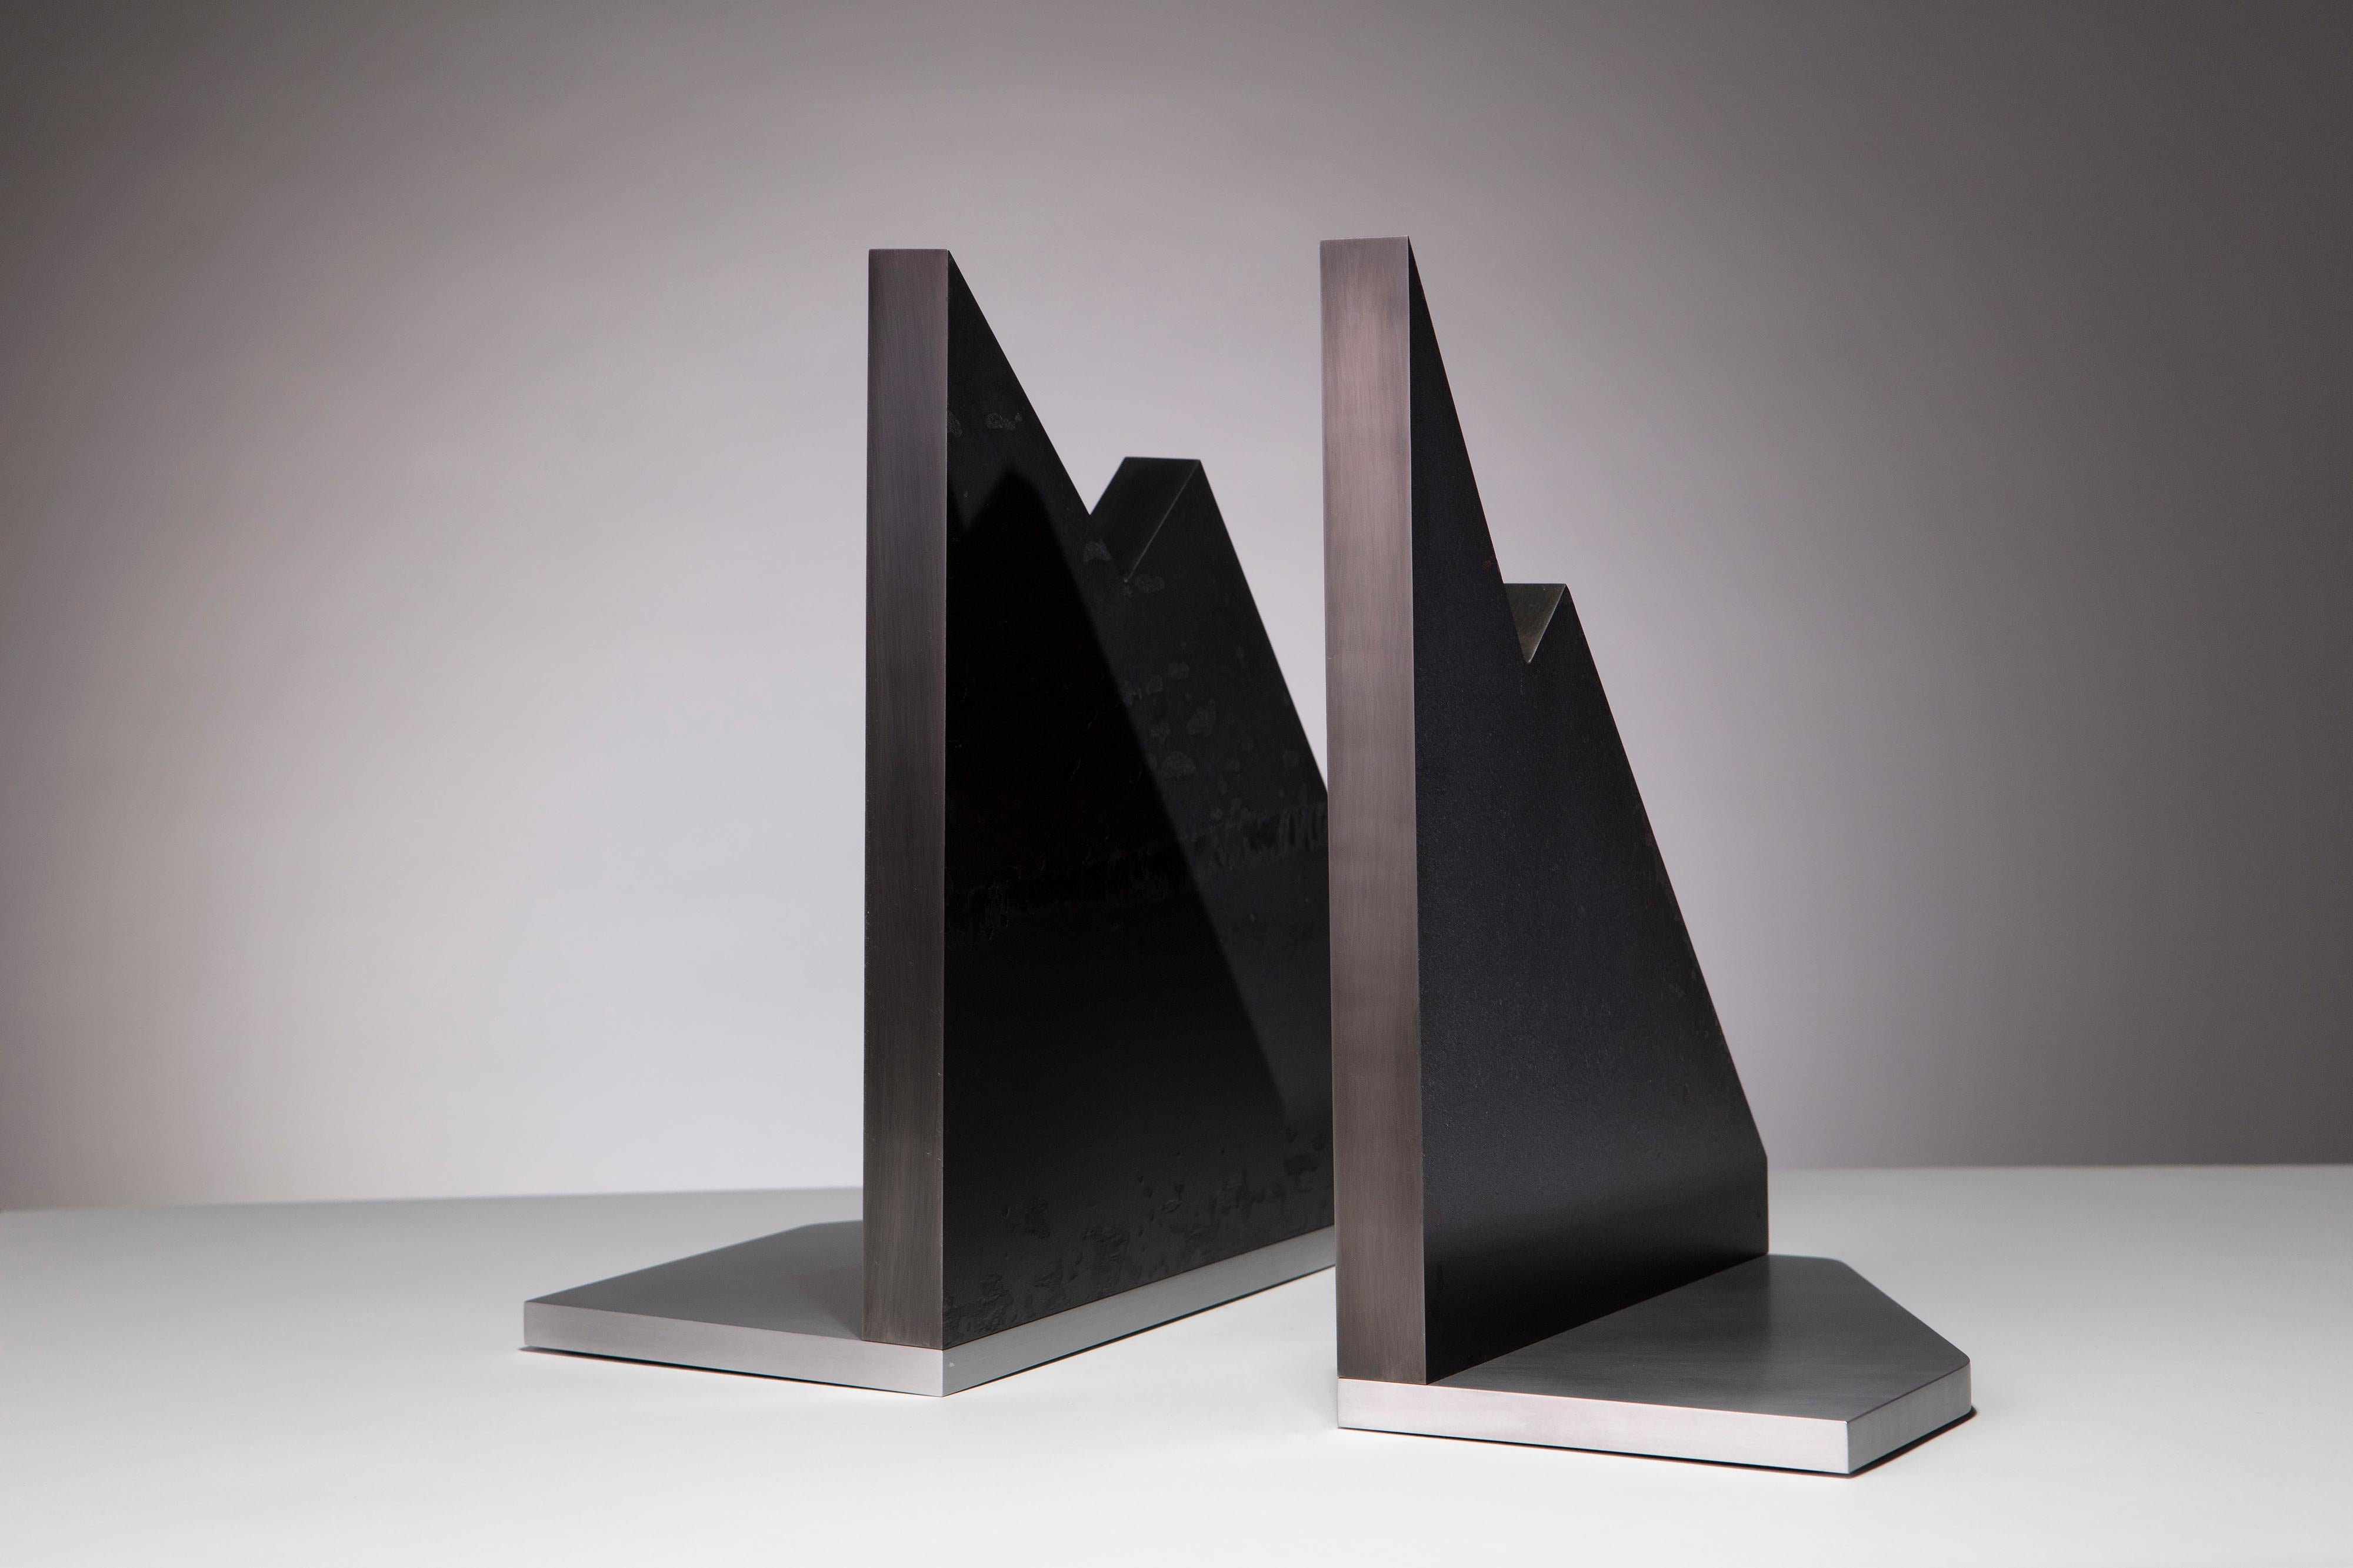 The Mountains : serre-livres sculpturaux modernes en acier et aluminium d'Erik Johnson d'APD. Des plaques d'acier massif et de l'aluminium bruni sont combinés pour former ces pièces audacieuses.

1 sur 1
Estampillé APD 00040

Lettre